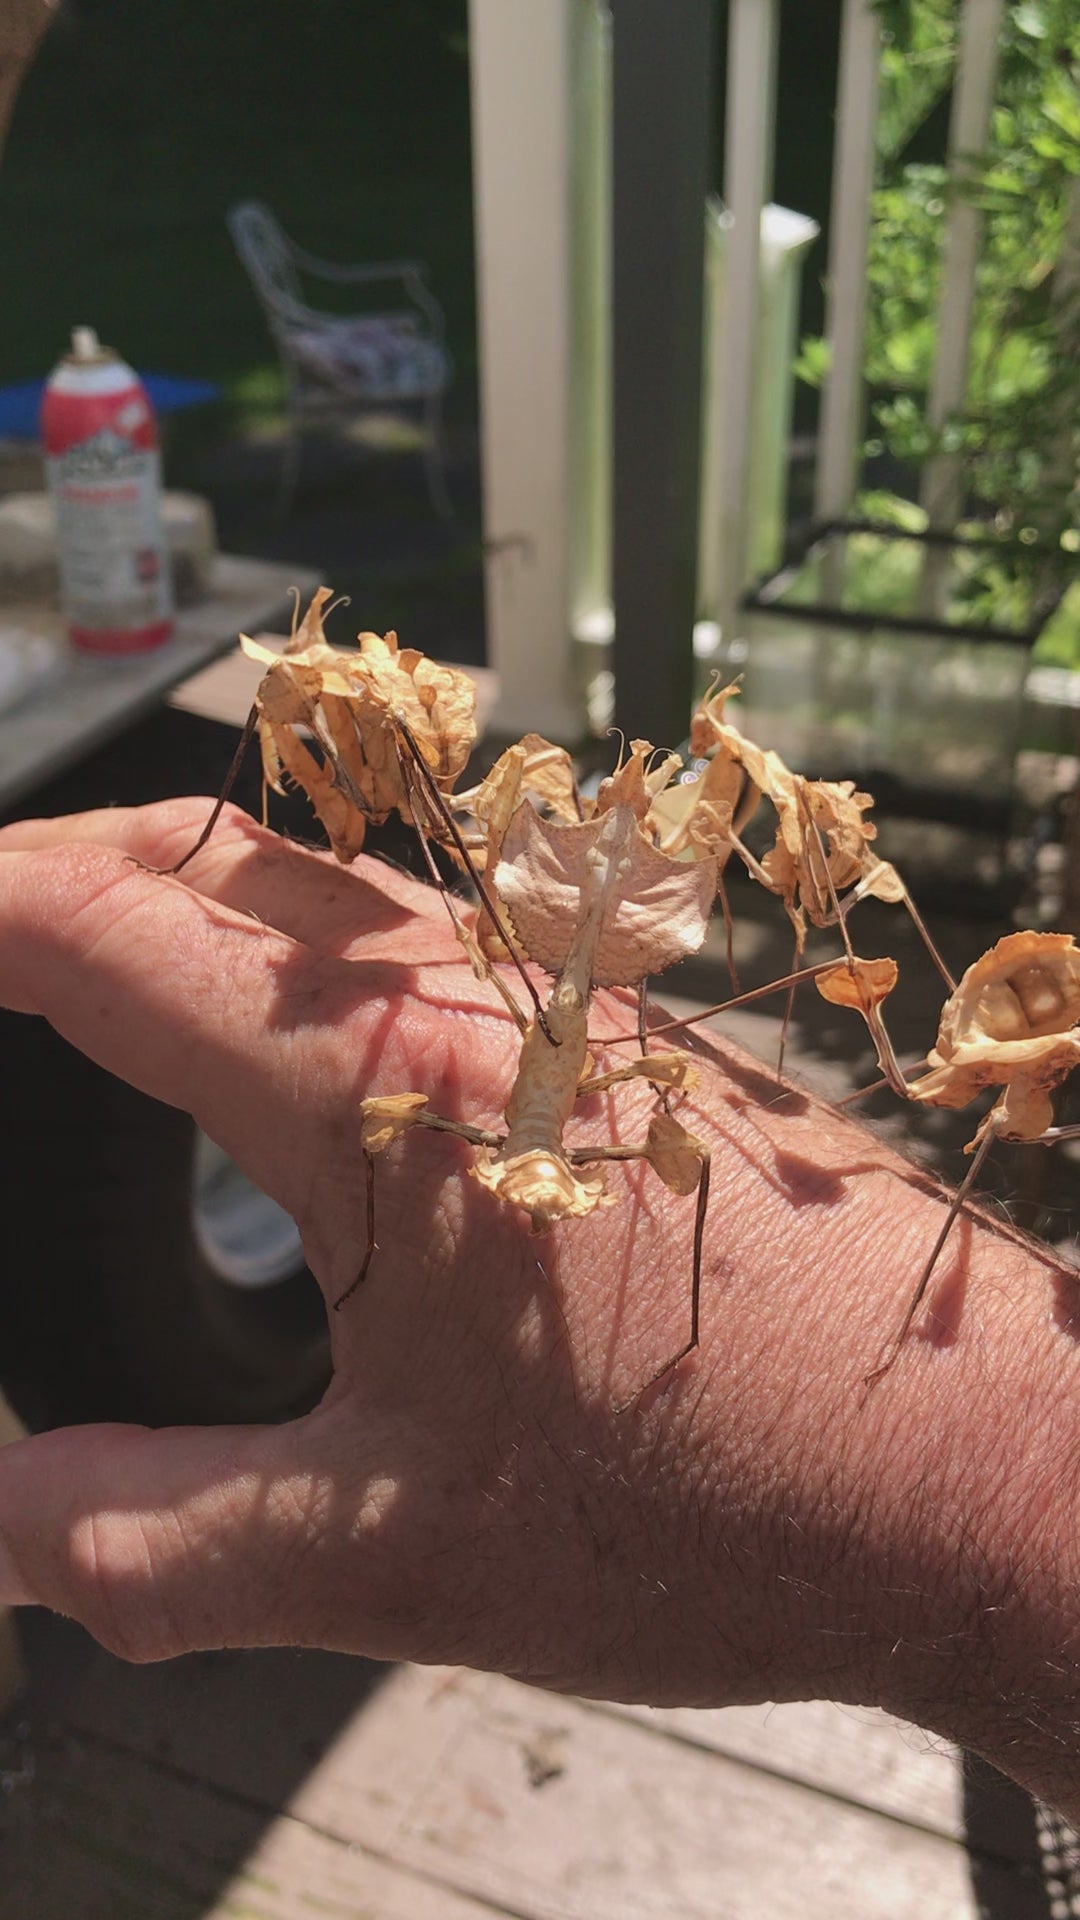 Oferta de Idolomantis diabolica: ¡Mantis flor del diablo nuevamente disponible!